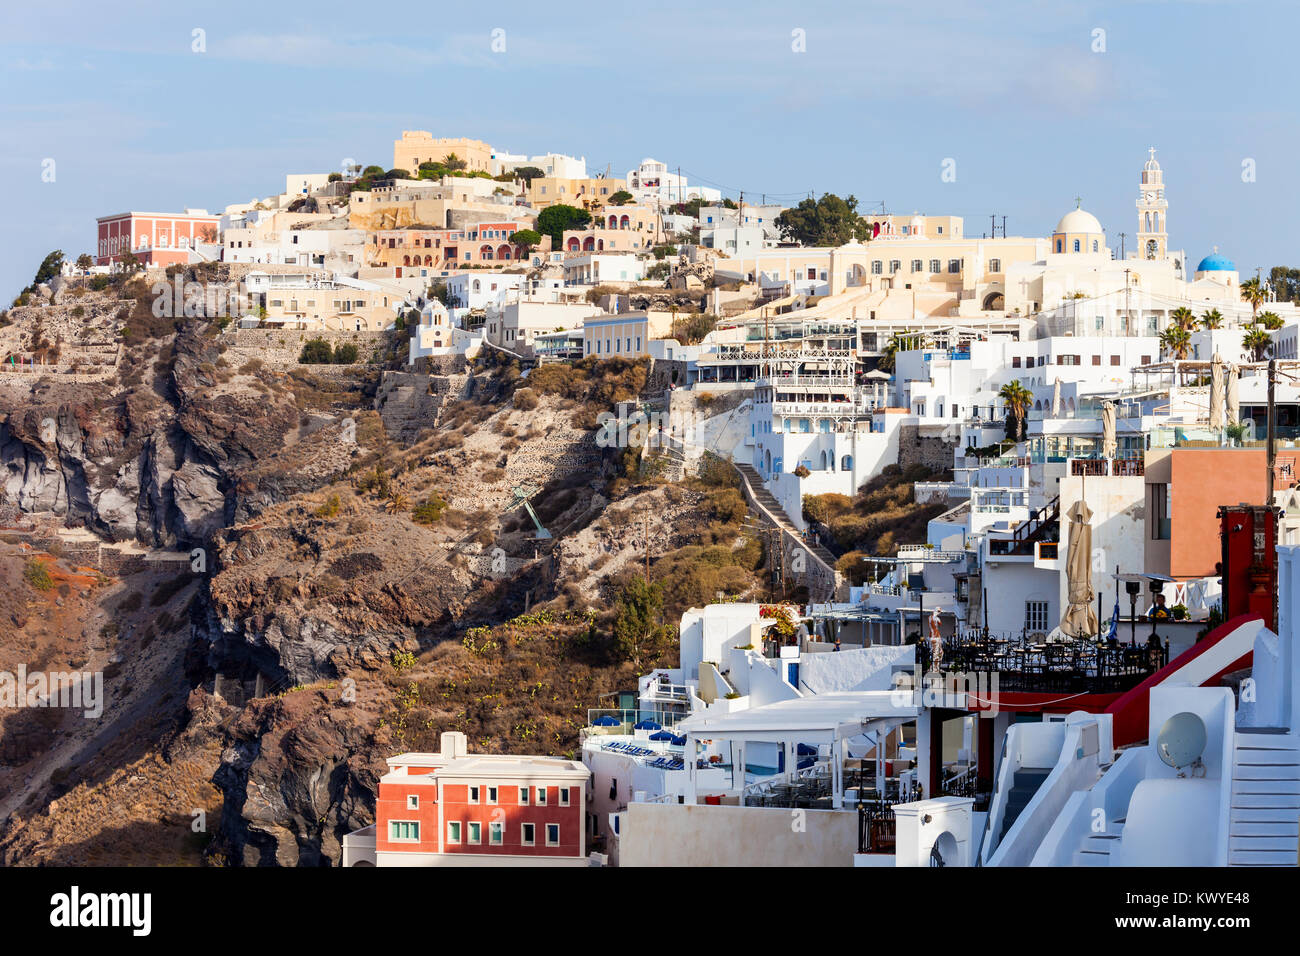 La cittadina di Fira e antenna vista panoramica, Santorini. Fira è la moderna capitale dell'isola di Santorini, Cicladi in Grecia. Foto Stock